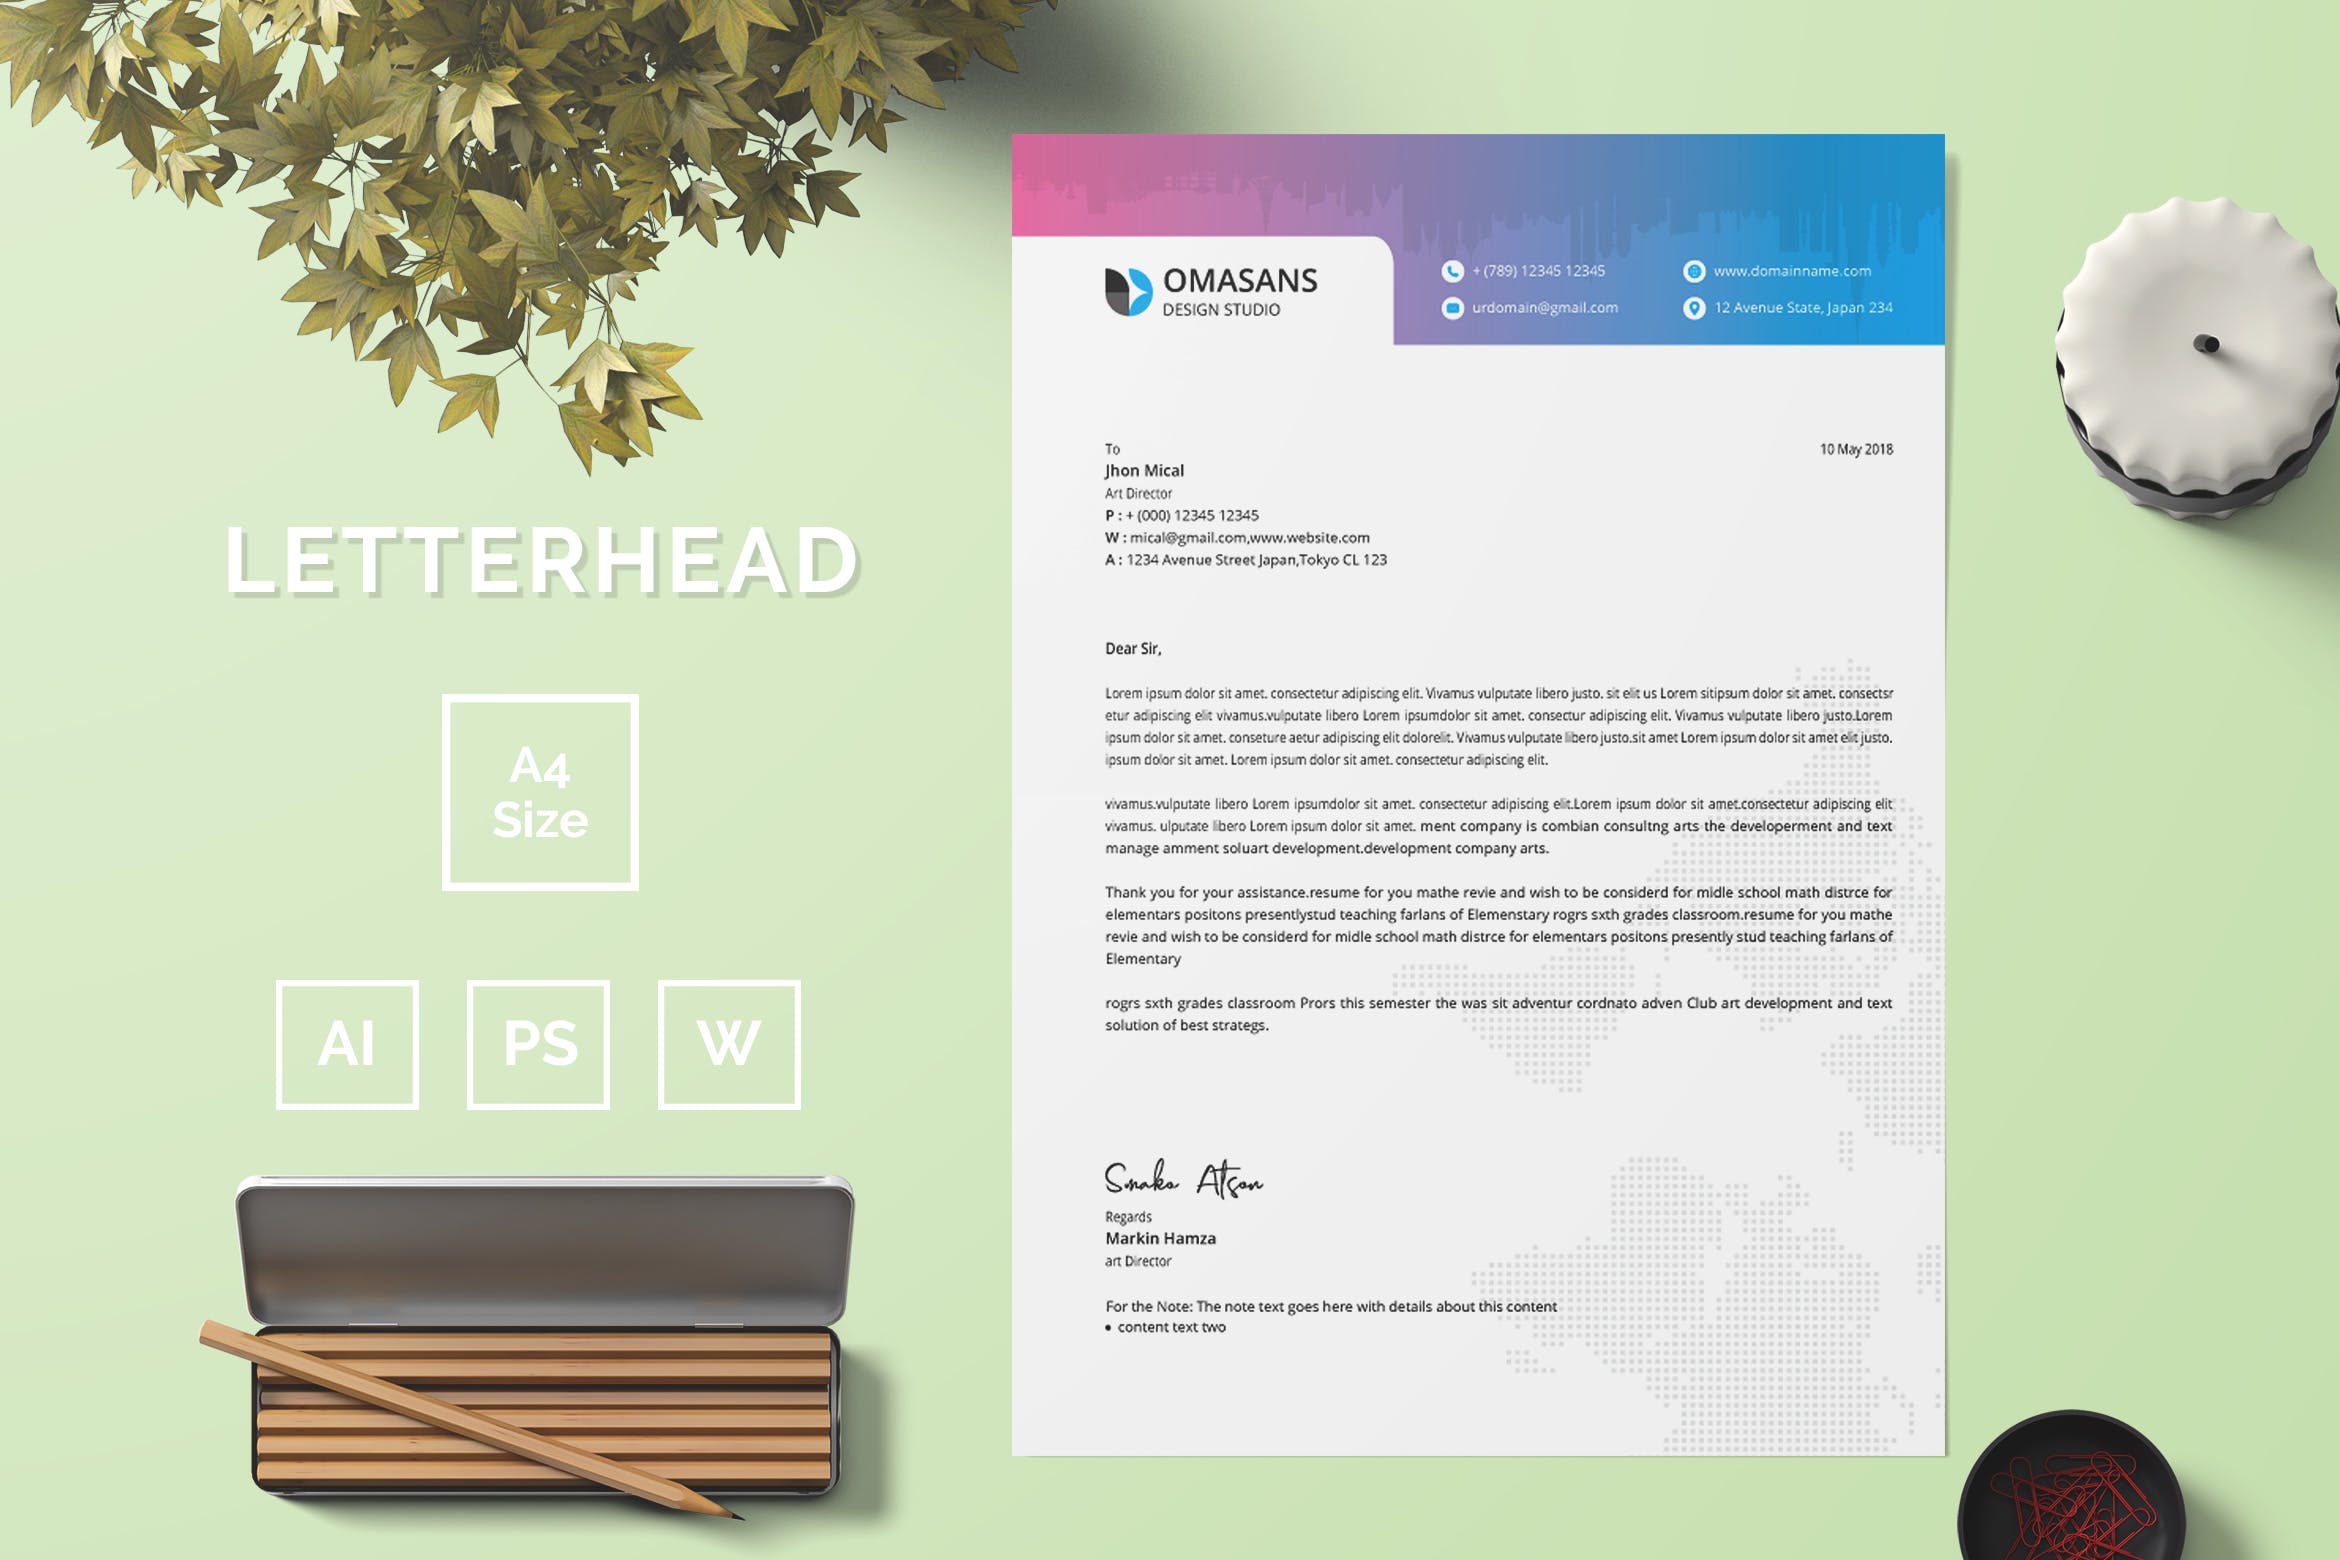 现代设计风格公开信/推荐信企业信纸设计模板04 Letterhead Template 04插图